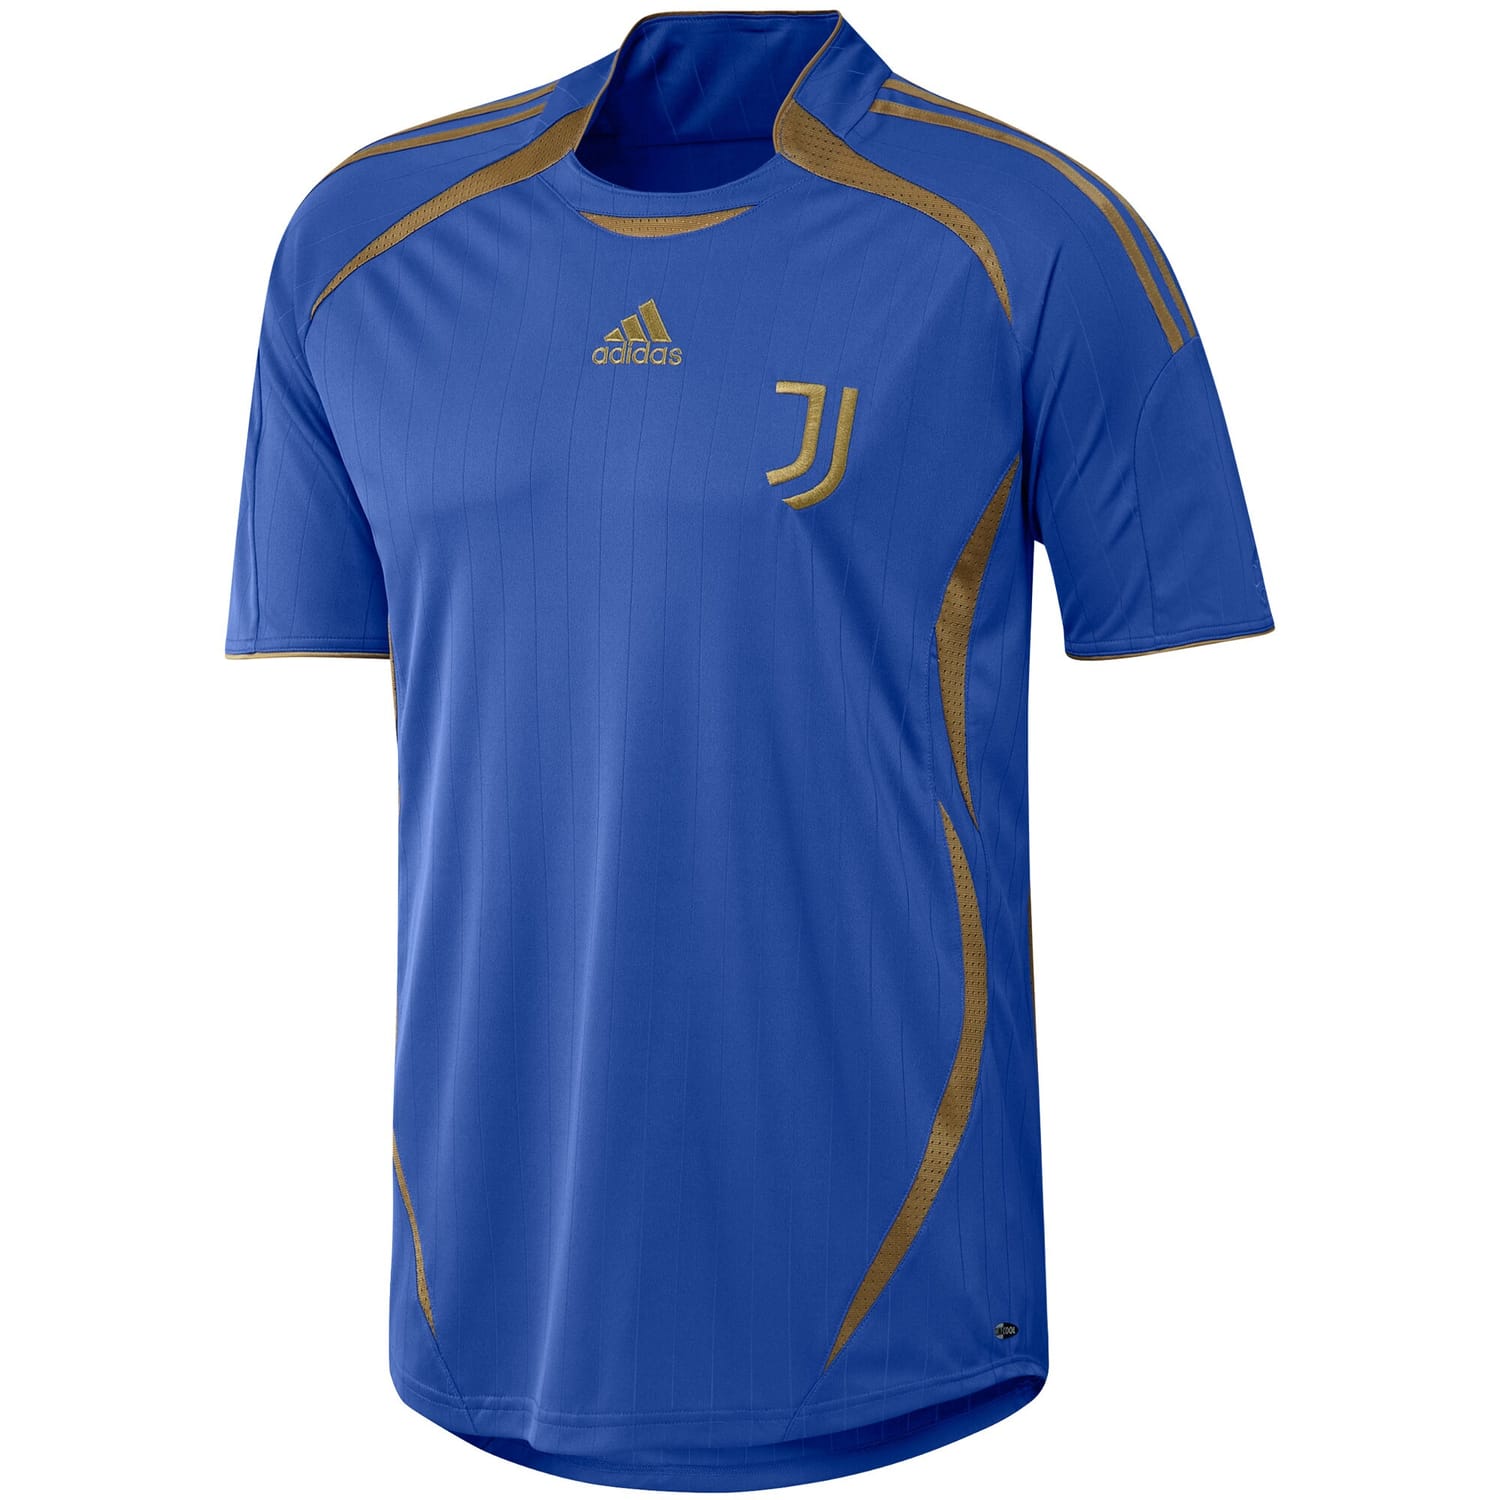 Serie A Juventus Jersey Shirt Blue for Men